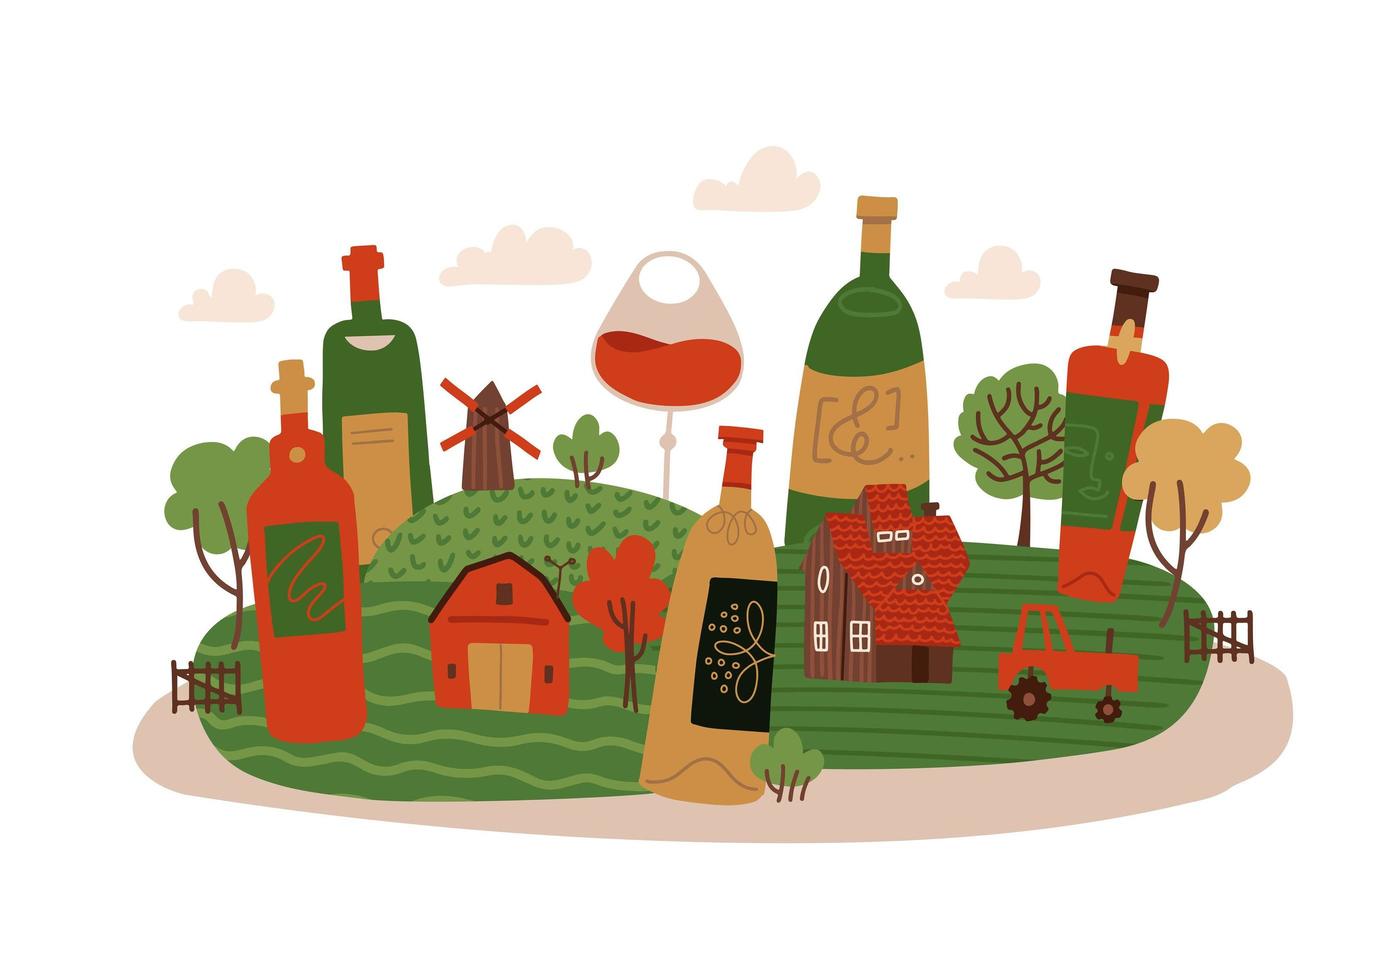 isoliertes kreatives konzept für das festival des neuen weins in frankreich. Weinflaschen in ländlicher Landschaft mit Häuschen, Baum und Mühle. vektor flache hand gezeichnete illustration.